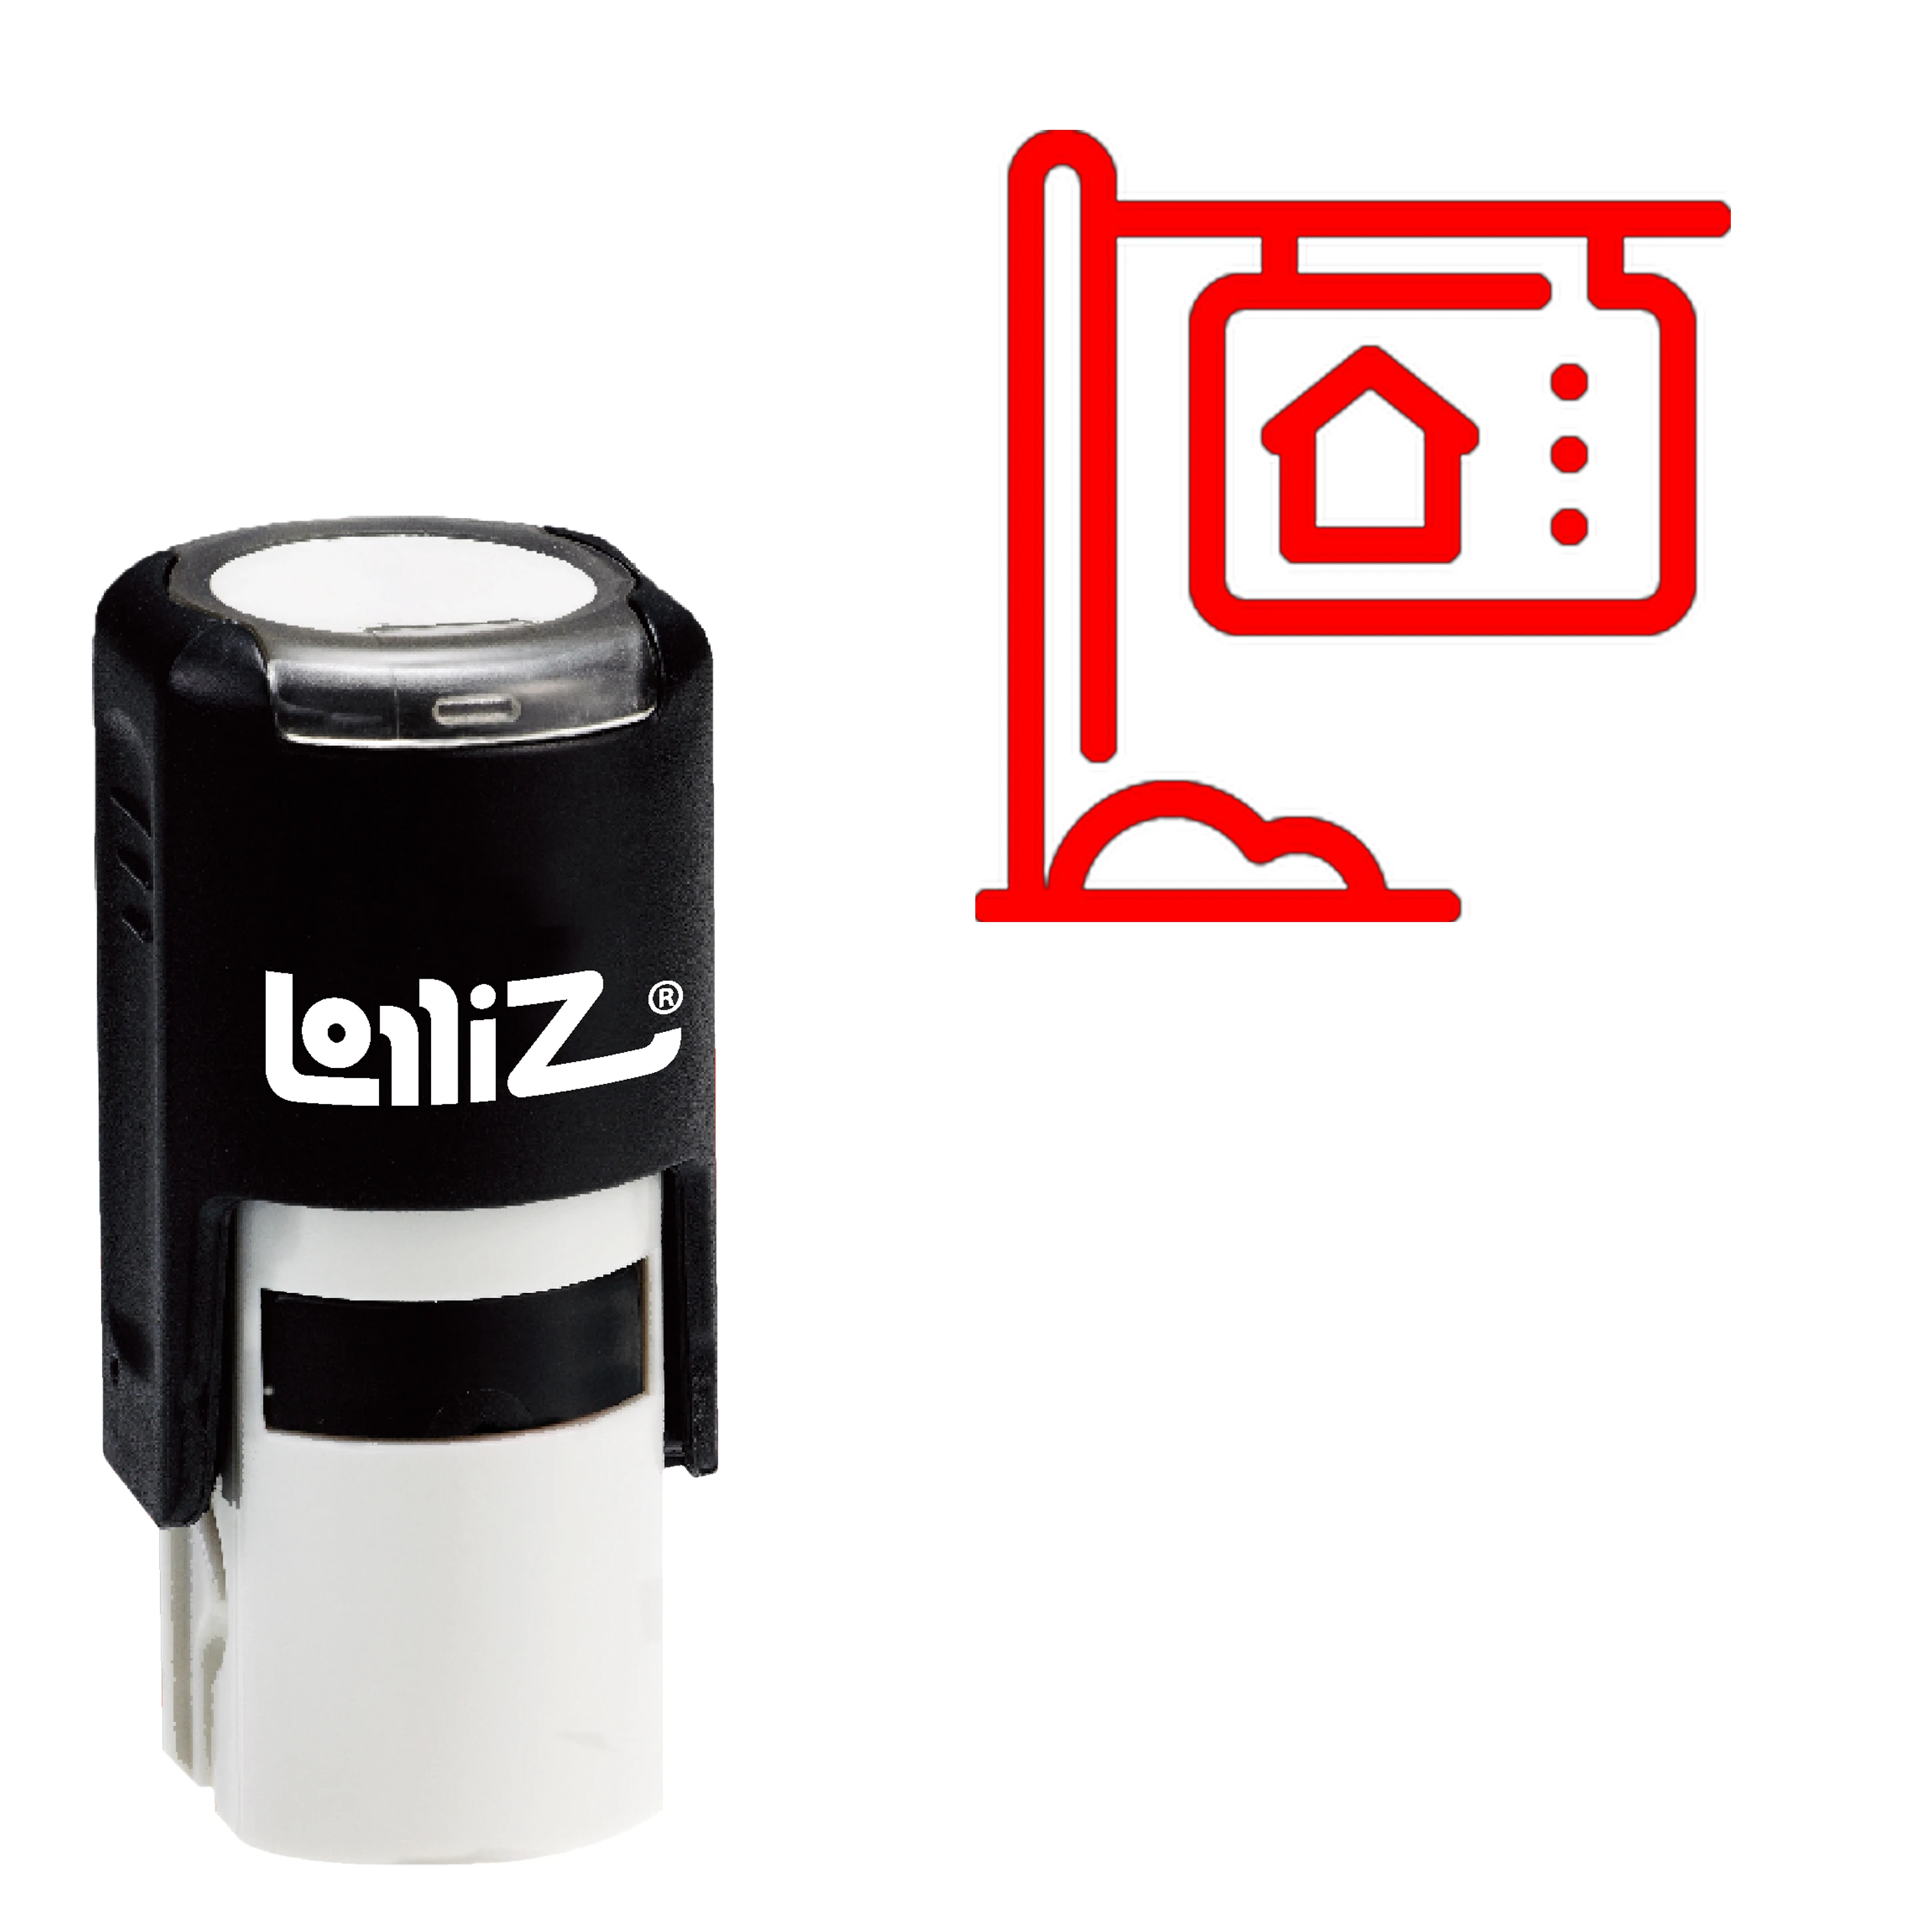 

LolliZ Home распродажа, самозаправляемая резиновая штамповка, серия с современным символом